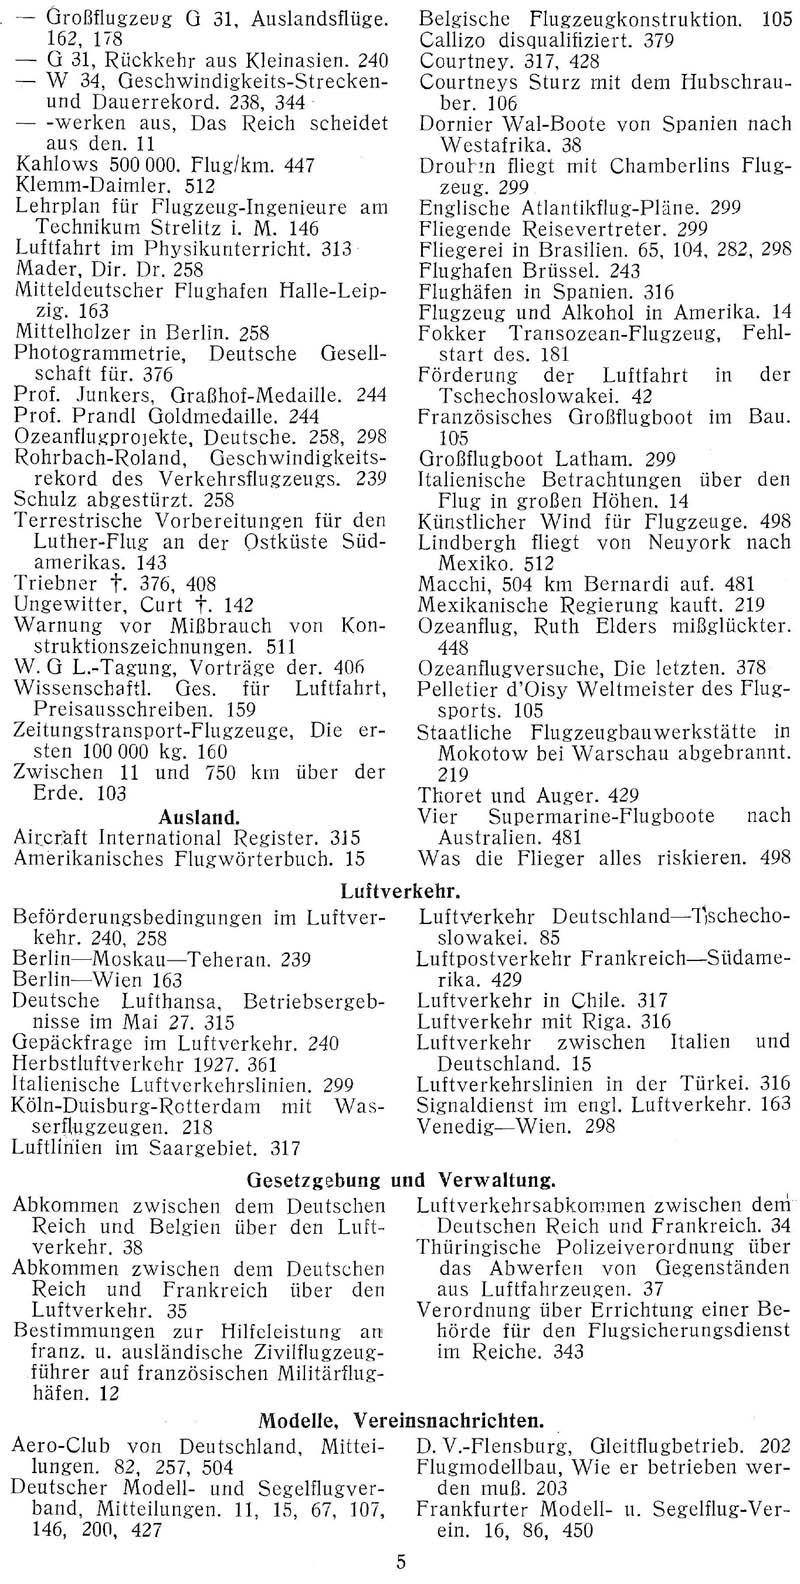 Sachregister und Inhaltsverzeichnis der Zeitschrift Flugsport für das Jahr 1927